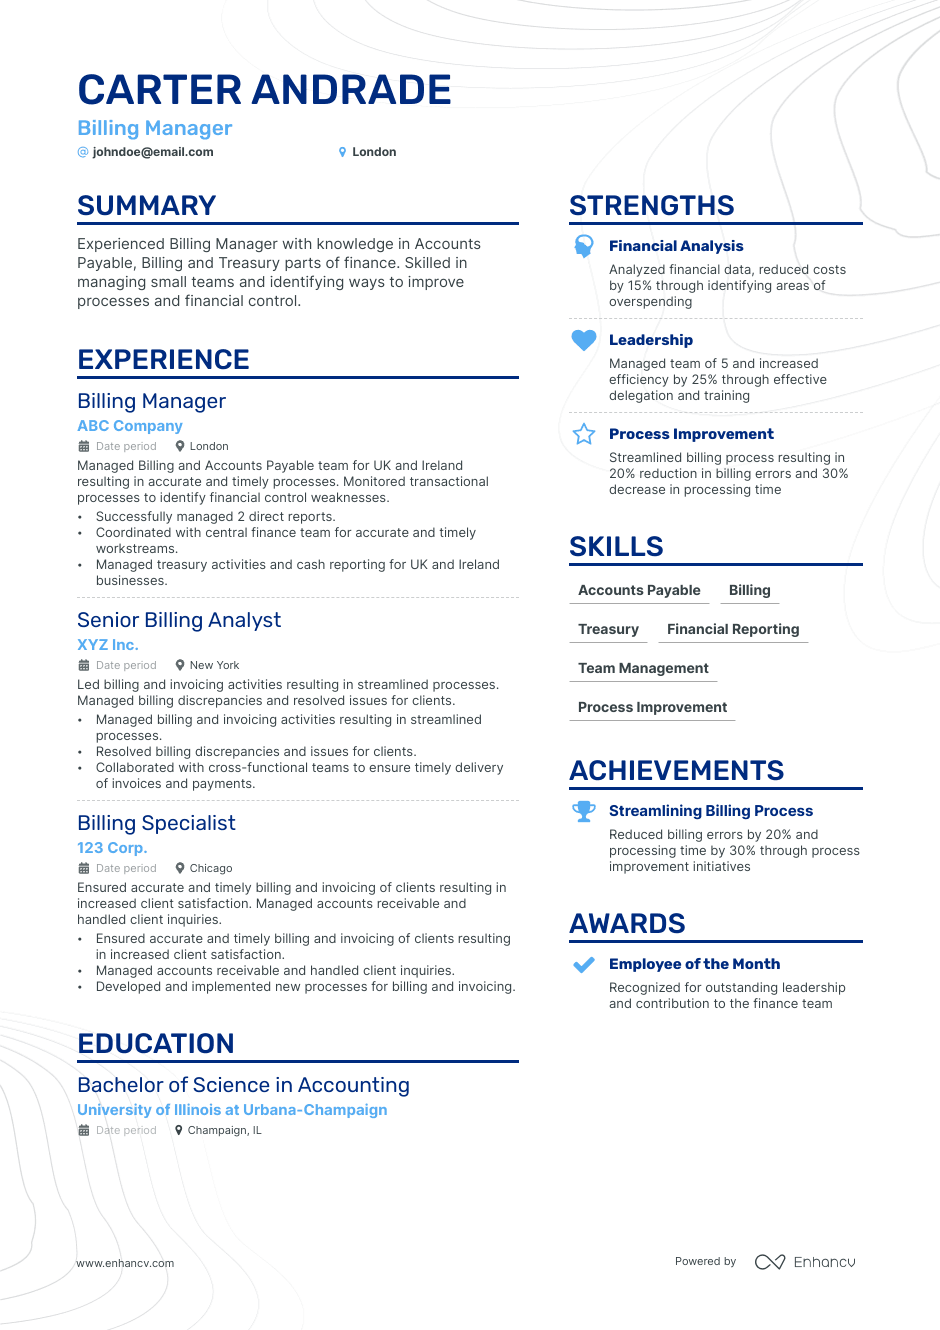 Academic resume example